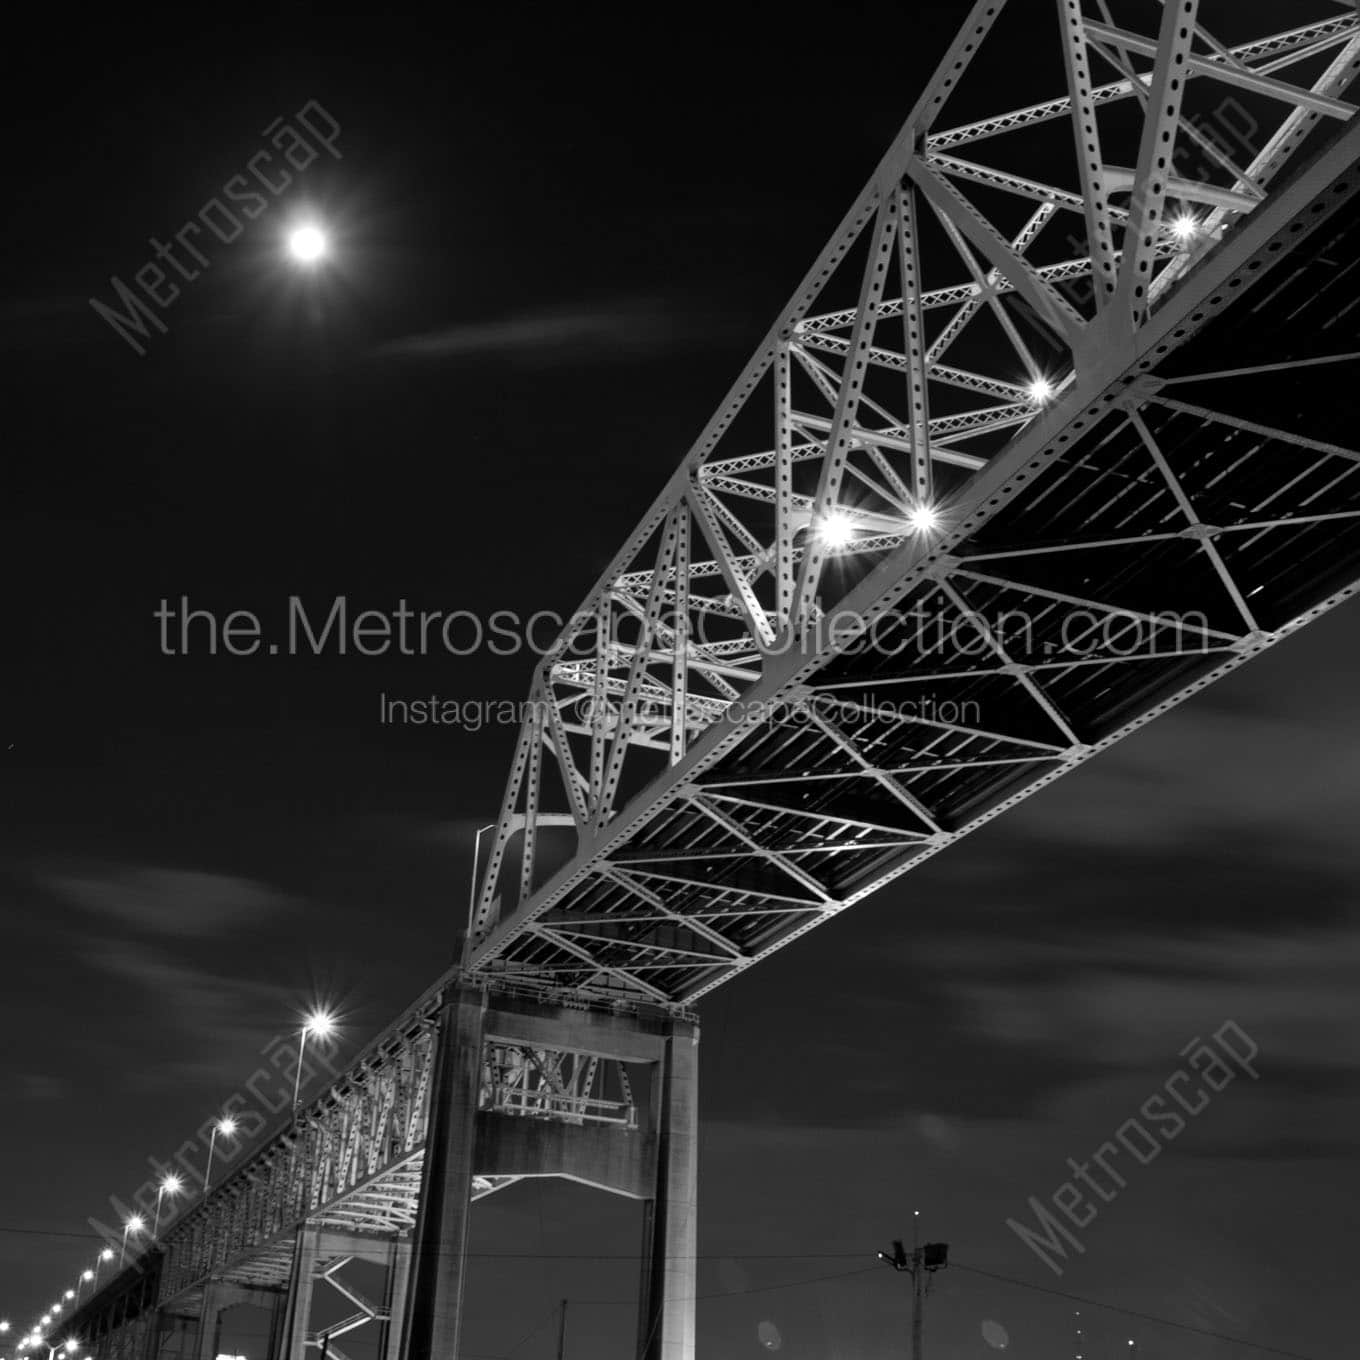 westbank expressway bridge at night Black & White Wall Art